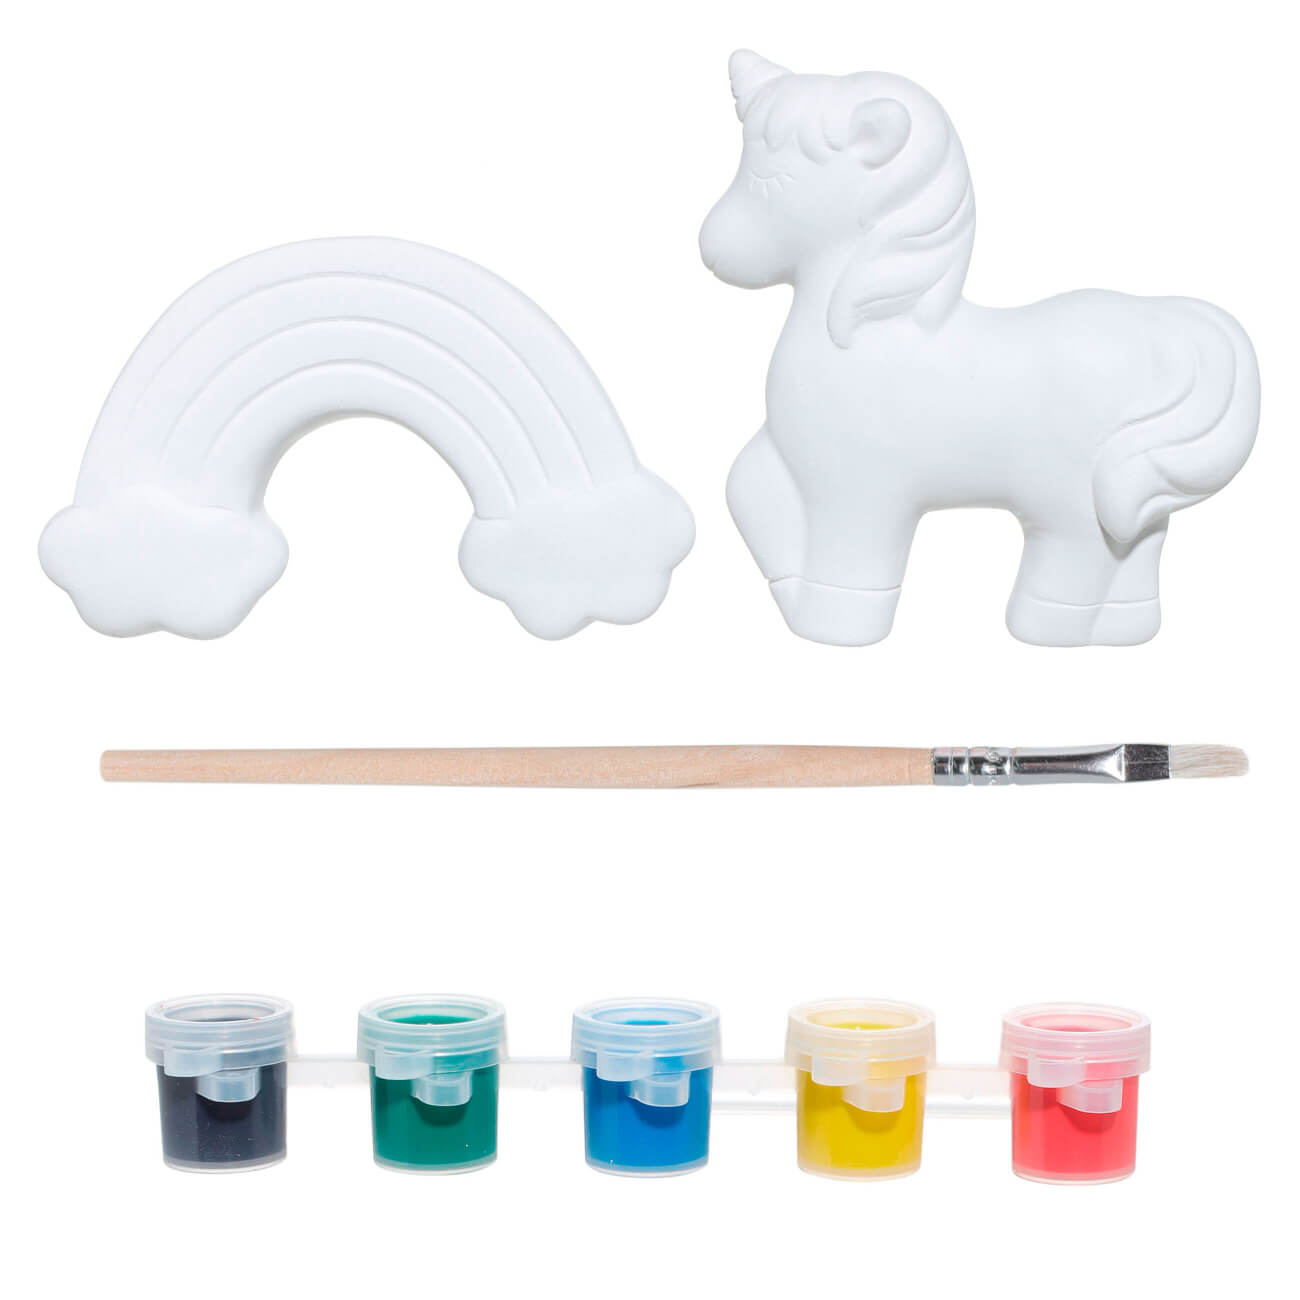 Набор для творчества, 2 пр, роспись, керамика, Единорог и радуга, Unicorn набор для творчества 1 пр роспись гипс единорог unicorn